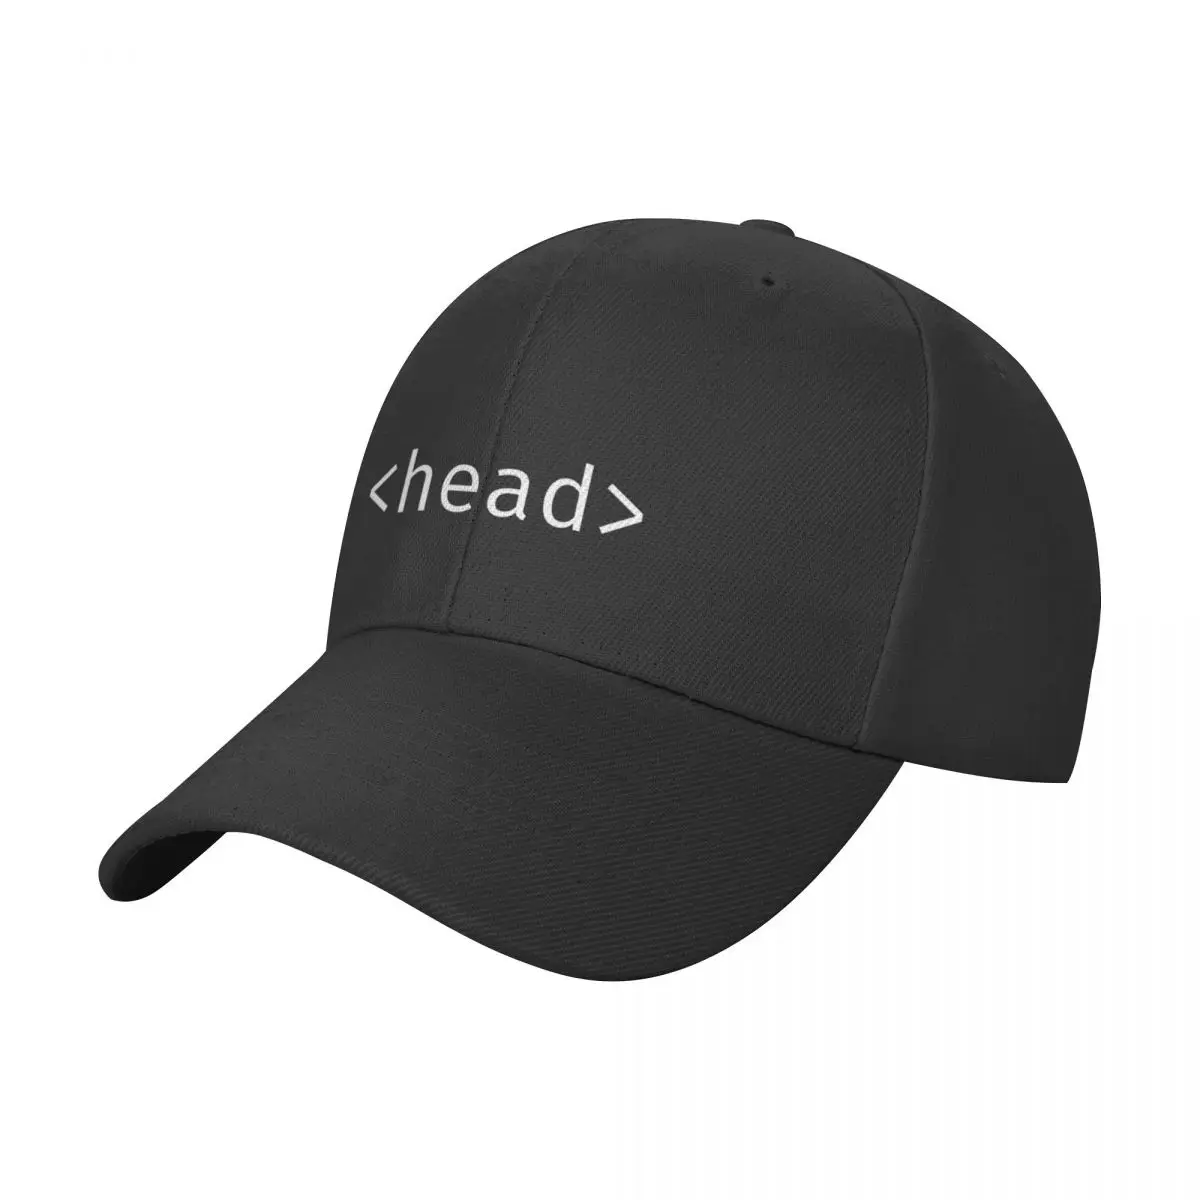 

Head, html coder веб-разработчик. Бейсболка, западные шляпы, шапка дикого мяча, НОВАЯ шапка, мужские шапки, женские